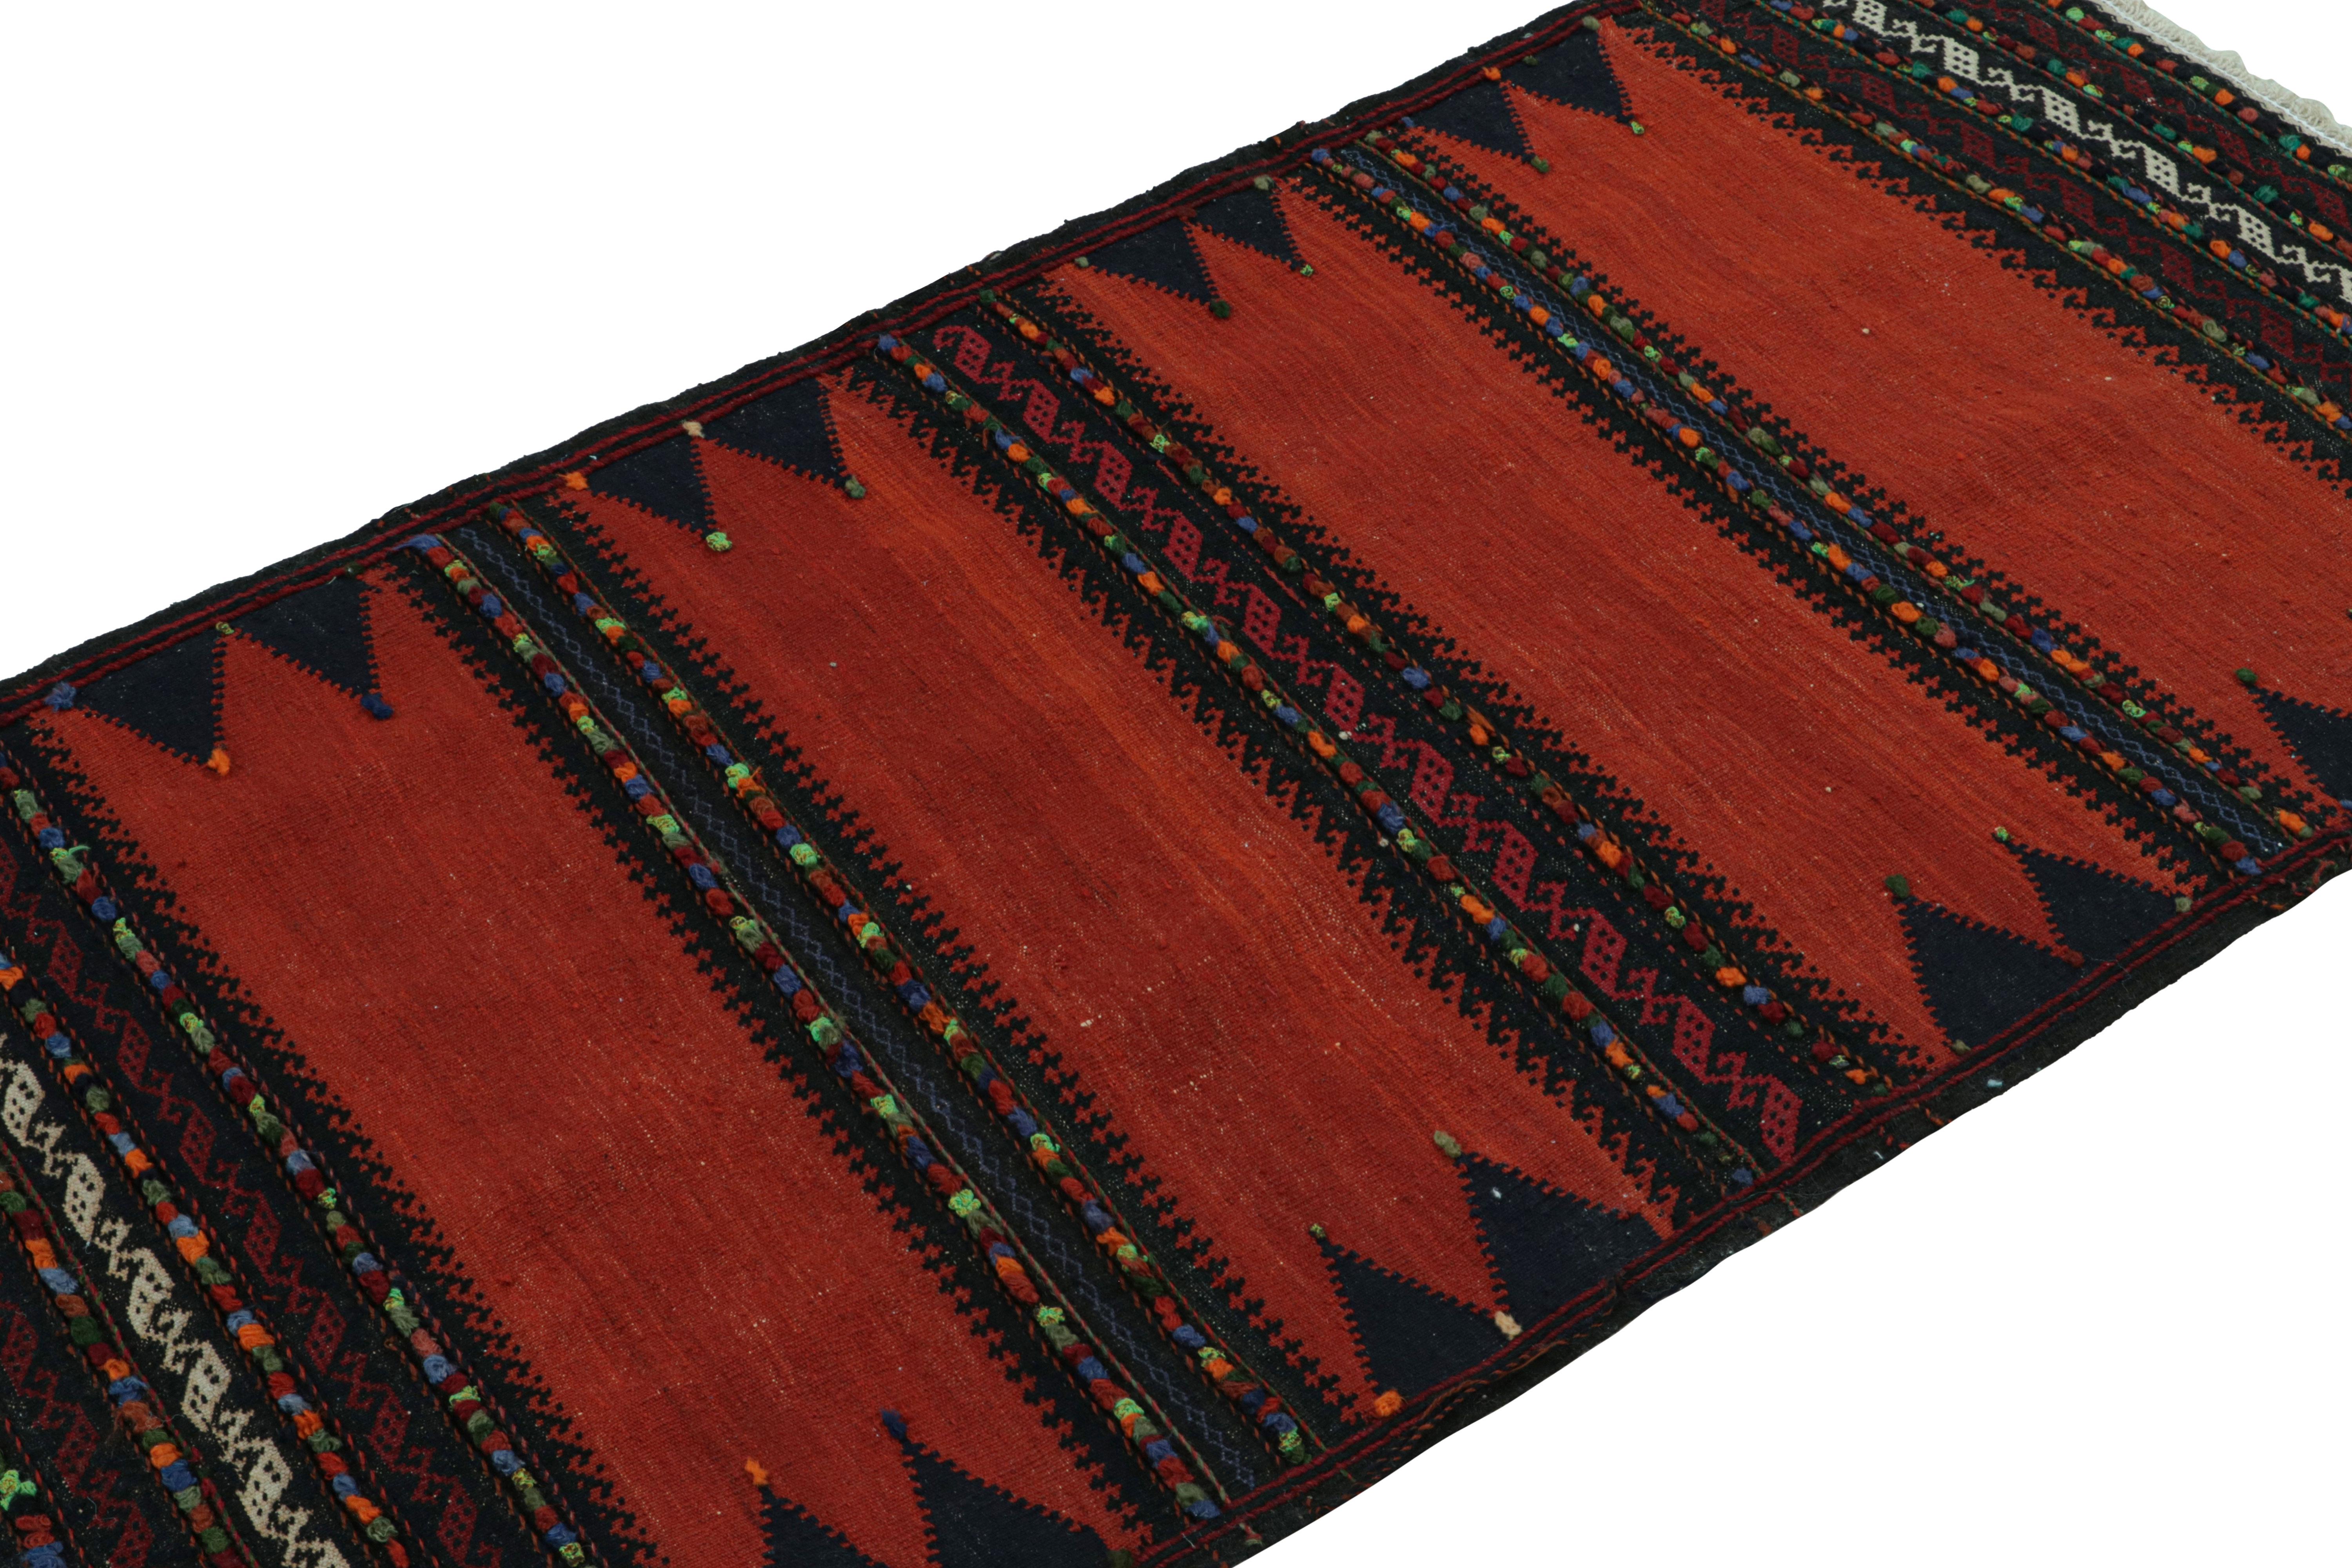 Dieser handgewebte afghanische 3x5-Stammes-Kilim aus Wolle (ca. 1950-1960) ist eine exquisite Ergänzung der Rug & Kilim-Kollektion im Stammesstil.  

Über das Design: 

Dieses archaische Kunstwerk mit althergebrachtem Charme, das auf afghanische